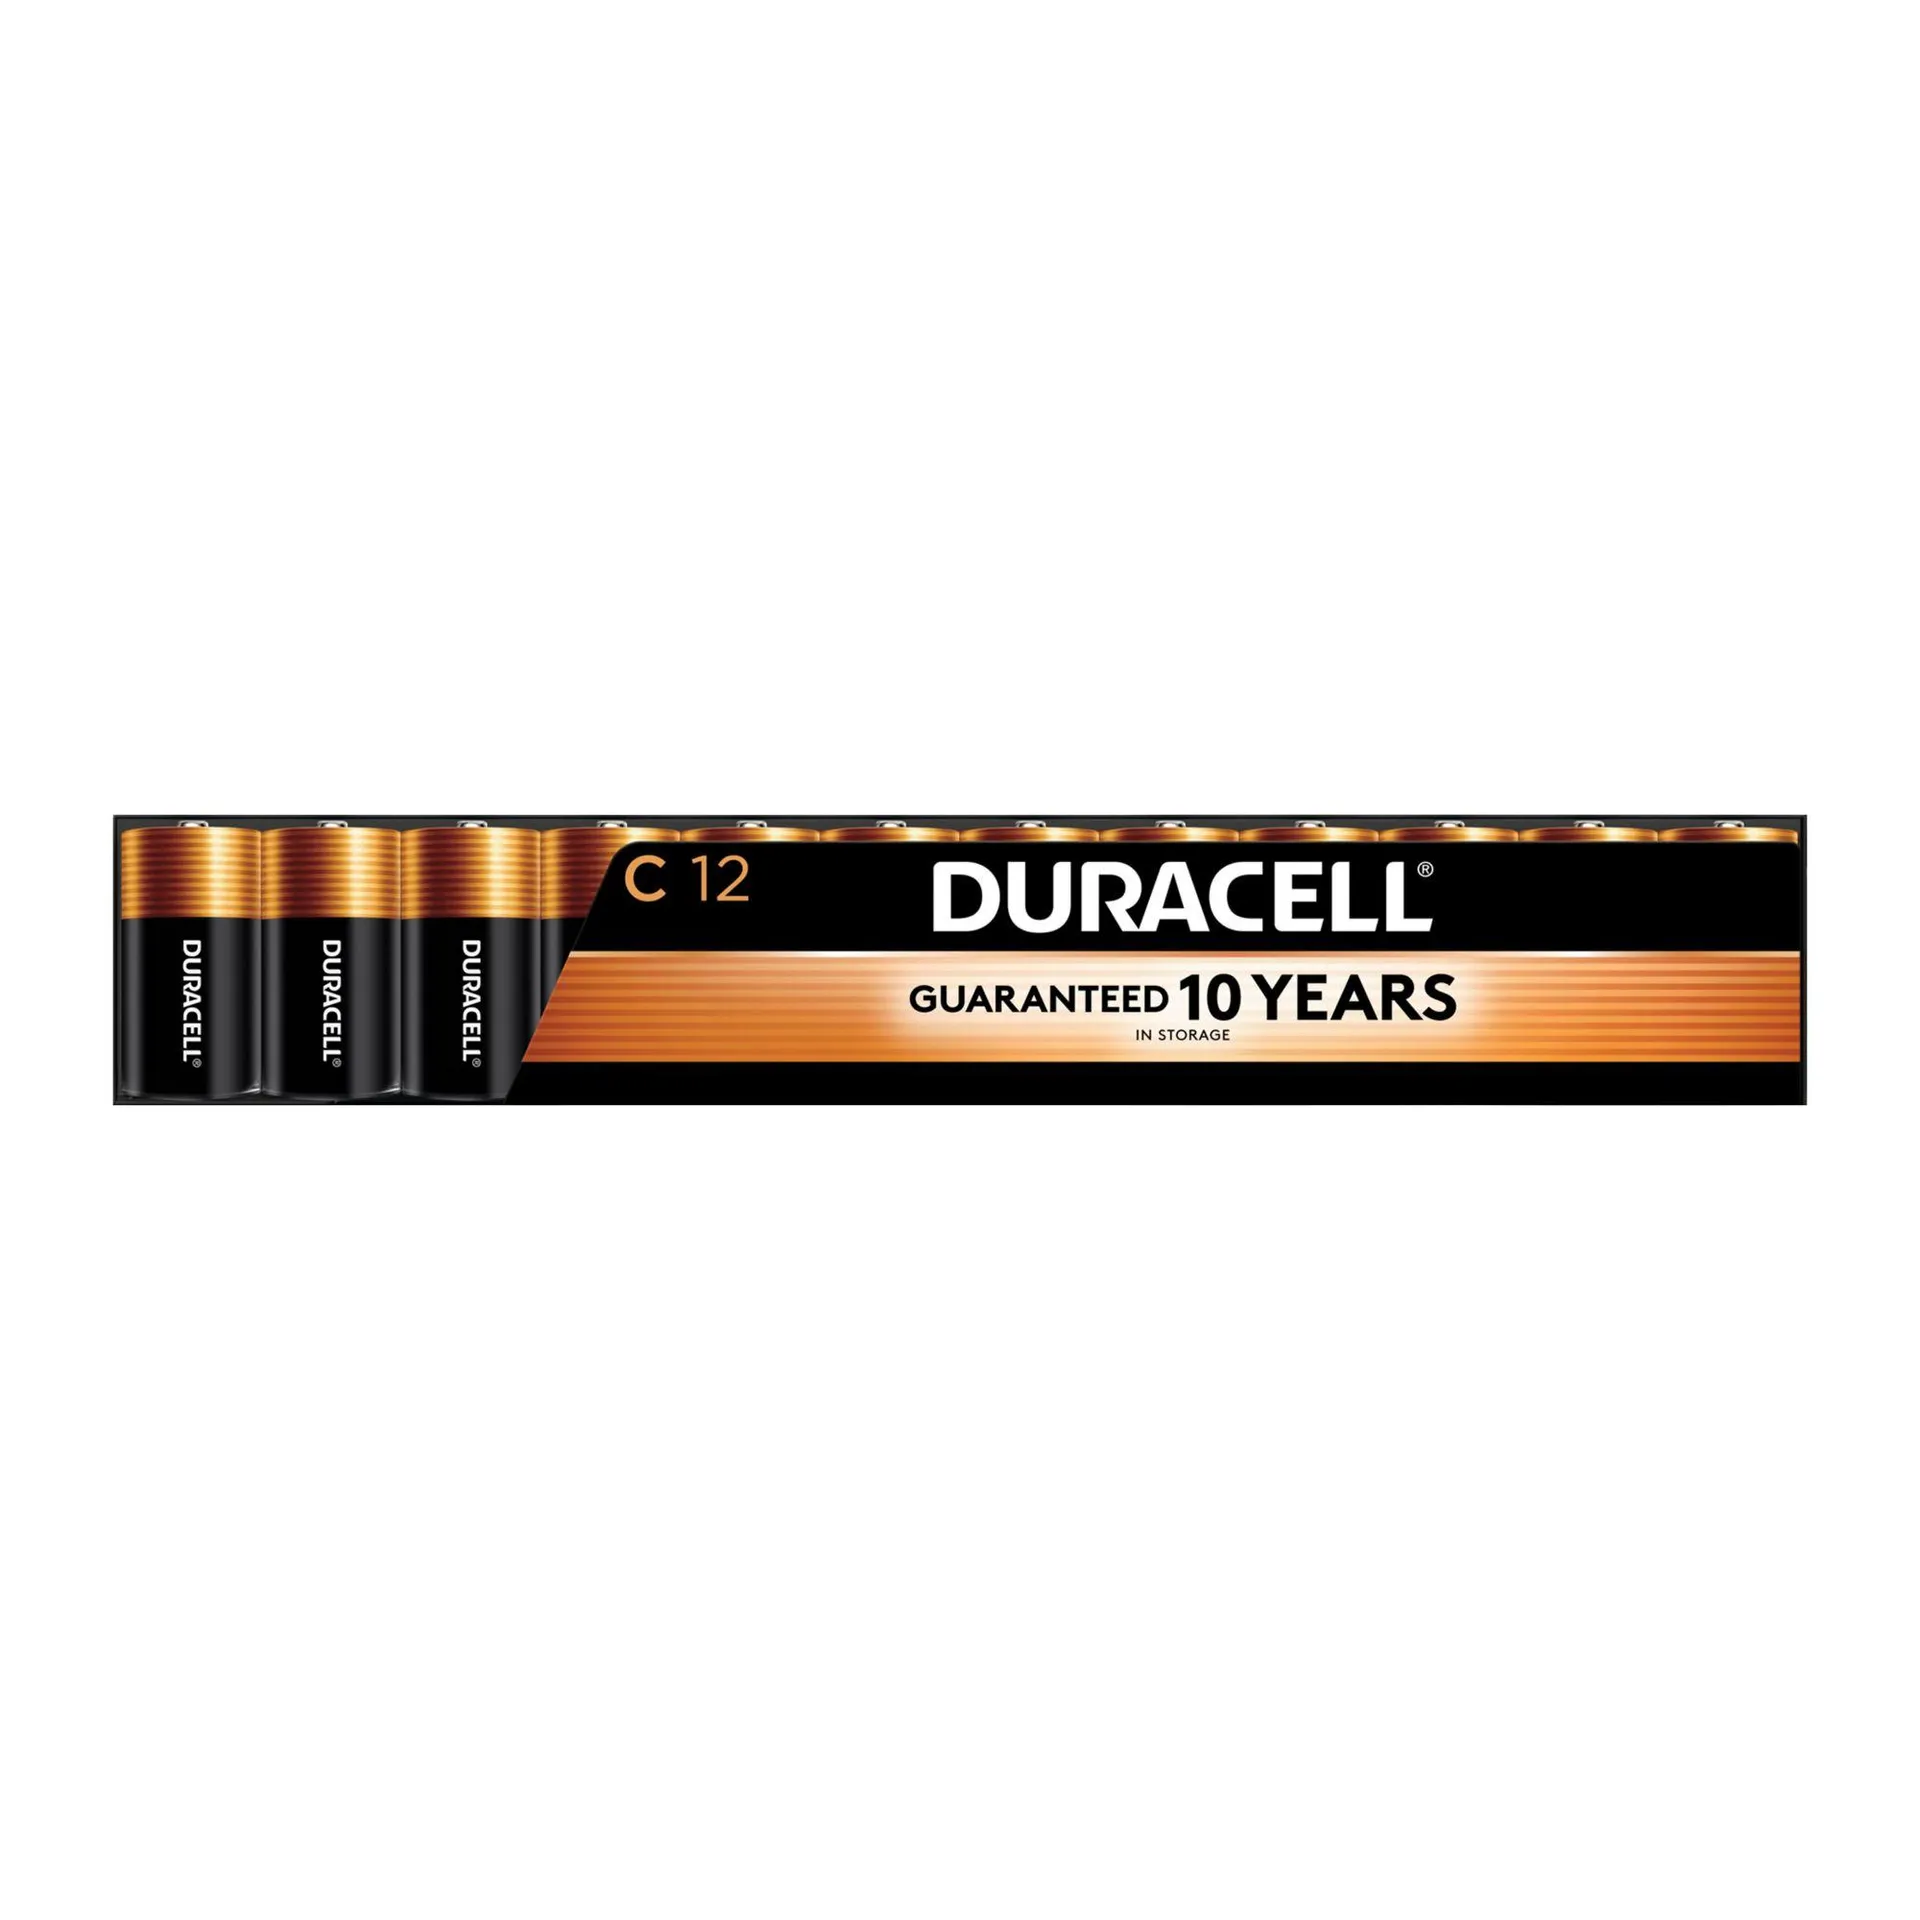 Duracell Coppertop C Batteries, 12 ct, Copper...